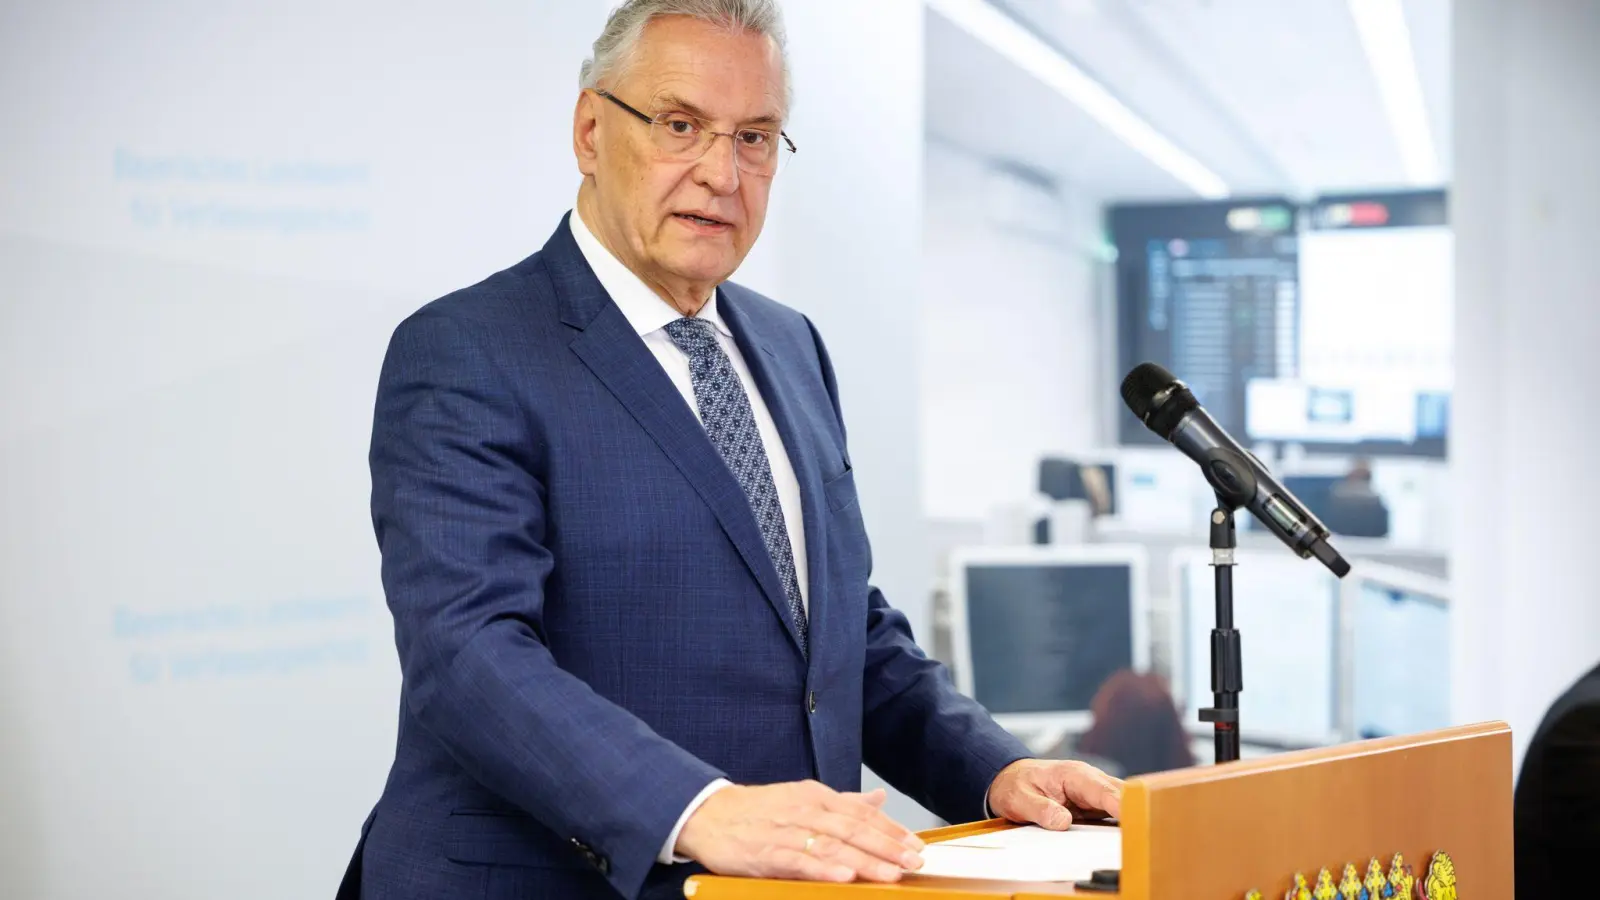 Bayerns Innenminister Joachim Herrmann spricht auf einer Pressekonferenz. (Foto: Matthias Balk/dpa/Archivbild)